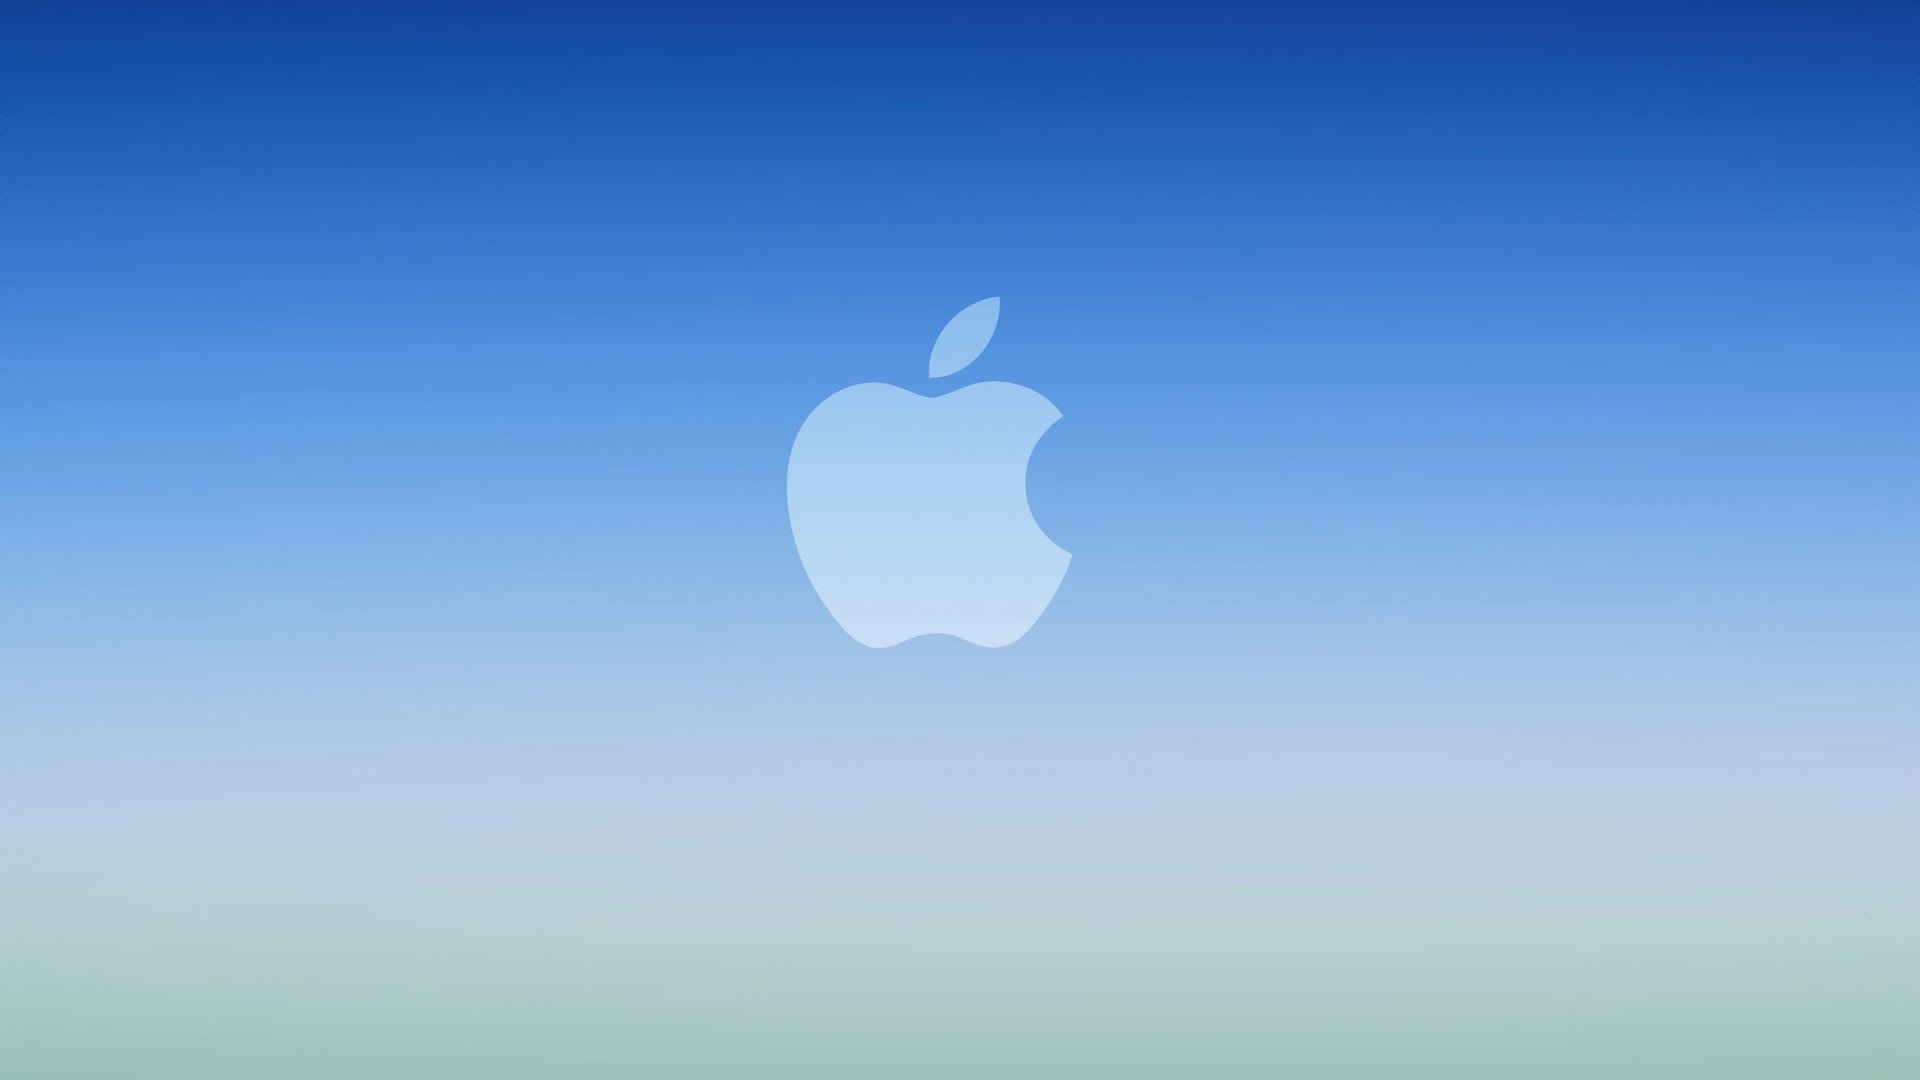 Обои айфон 1. Логотип Apple. Обои Apple. Обои на айфон. Обои Apple iphone.